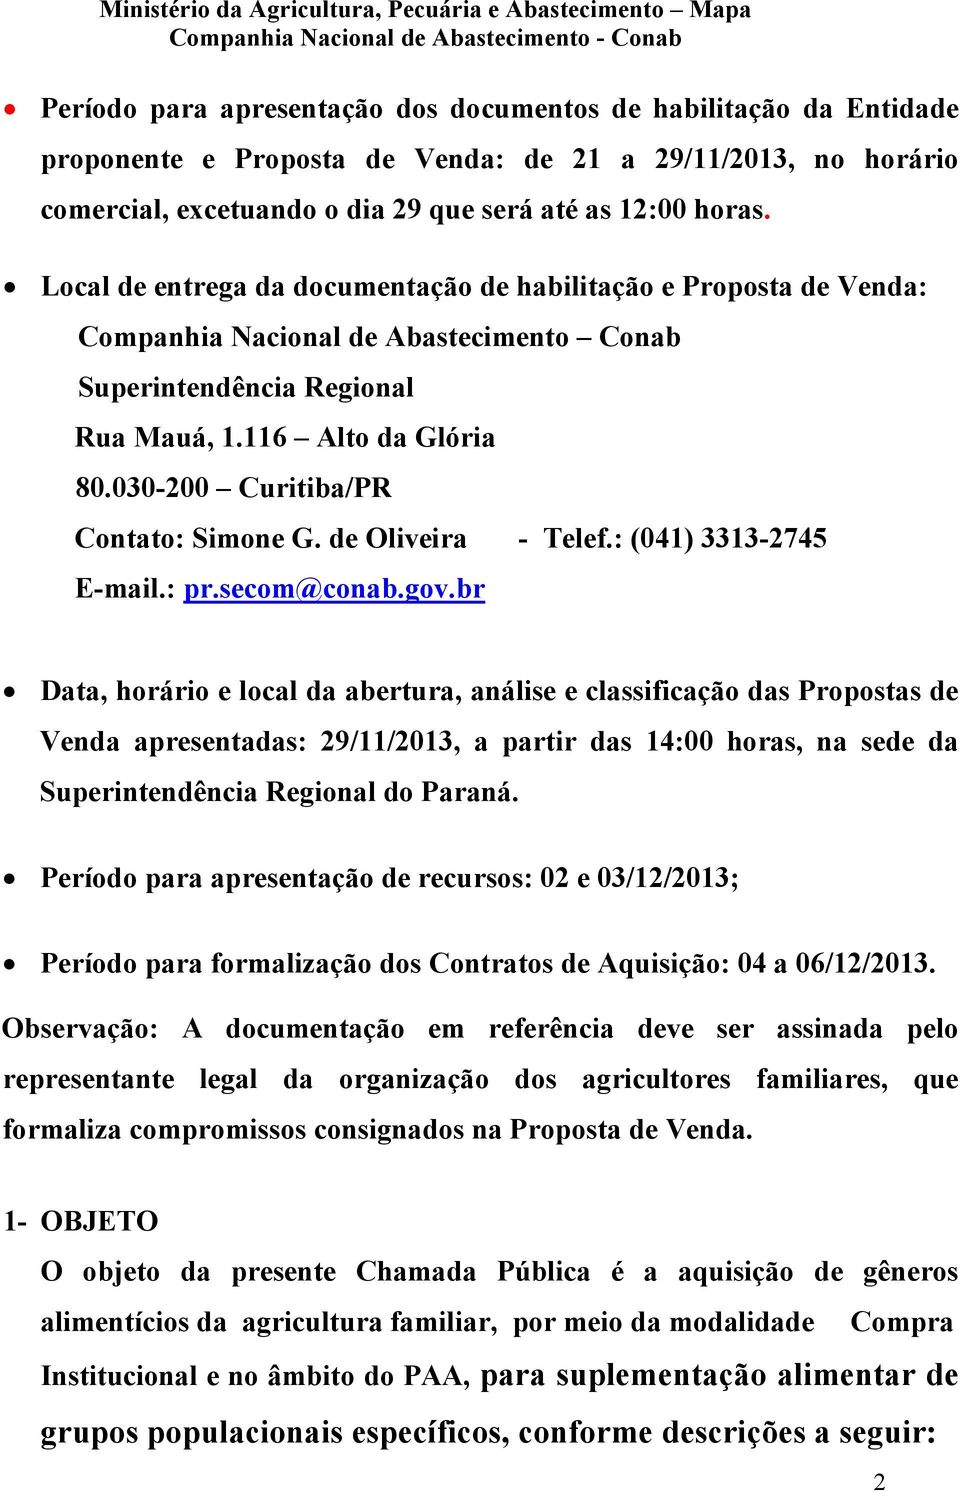 030-200 Curitiba/PR Contato: Simone G. de Oliveira - Telef.: (041) 3313-2745 E-mail.: pr.secom@conab.gov.